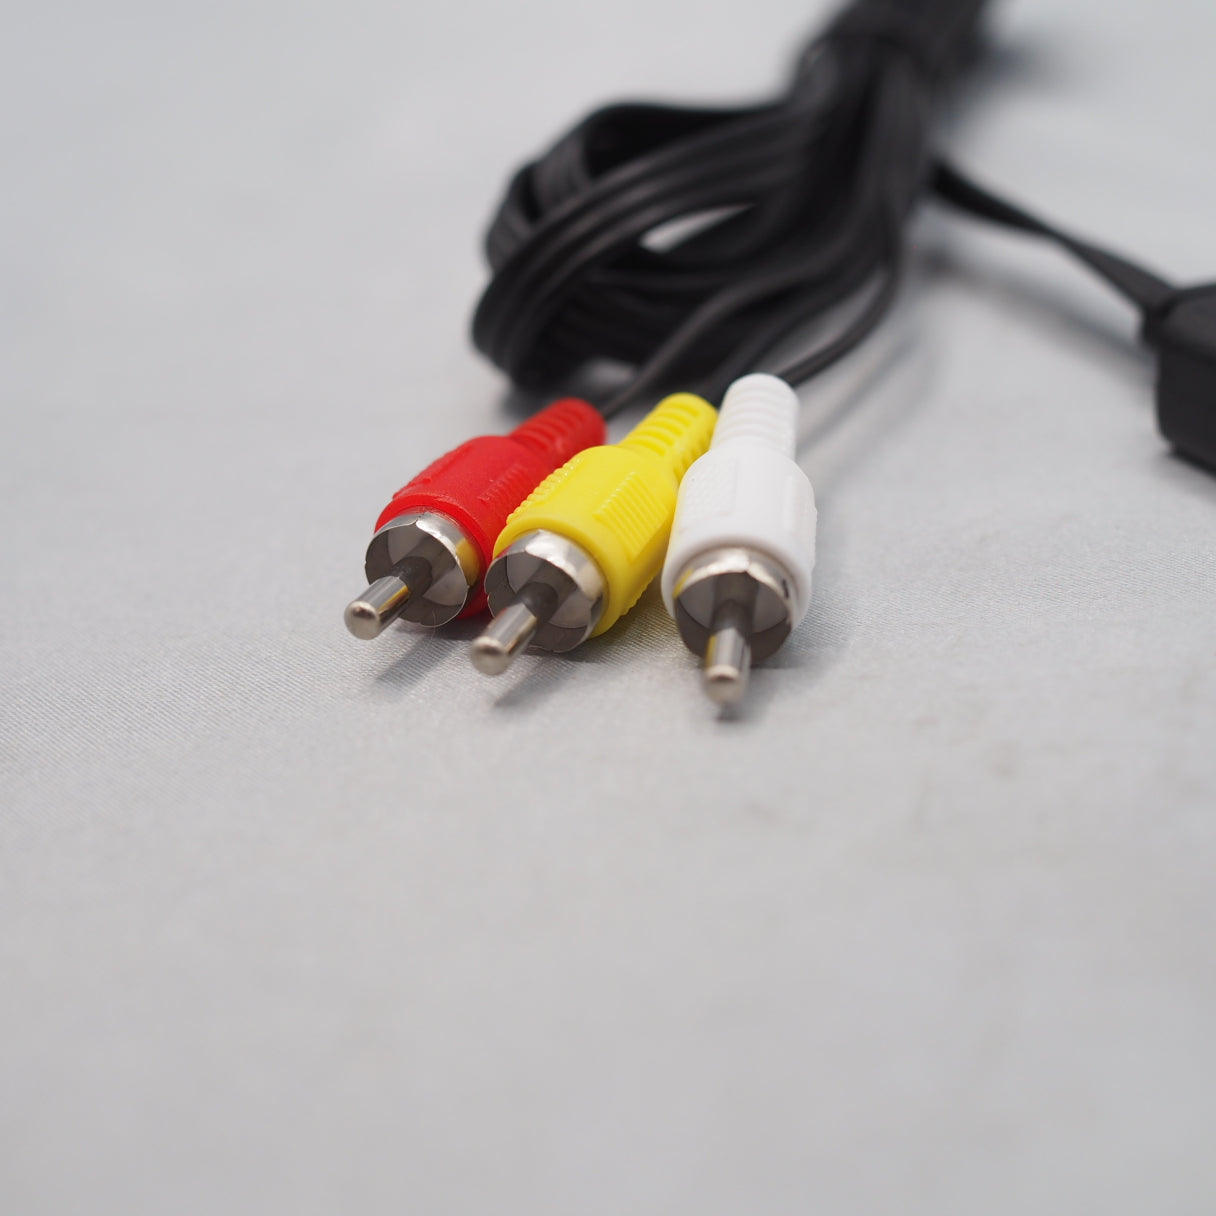 Stereo AV cable [For Nintendo Famicom, Super Famicom, N64, Gamecube]